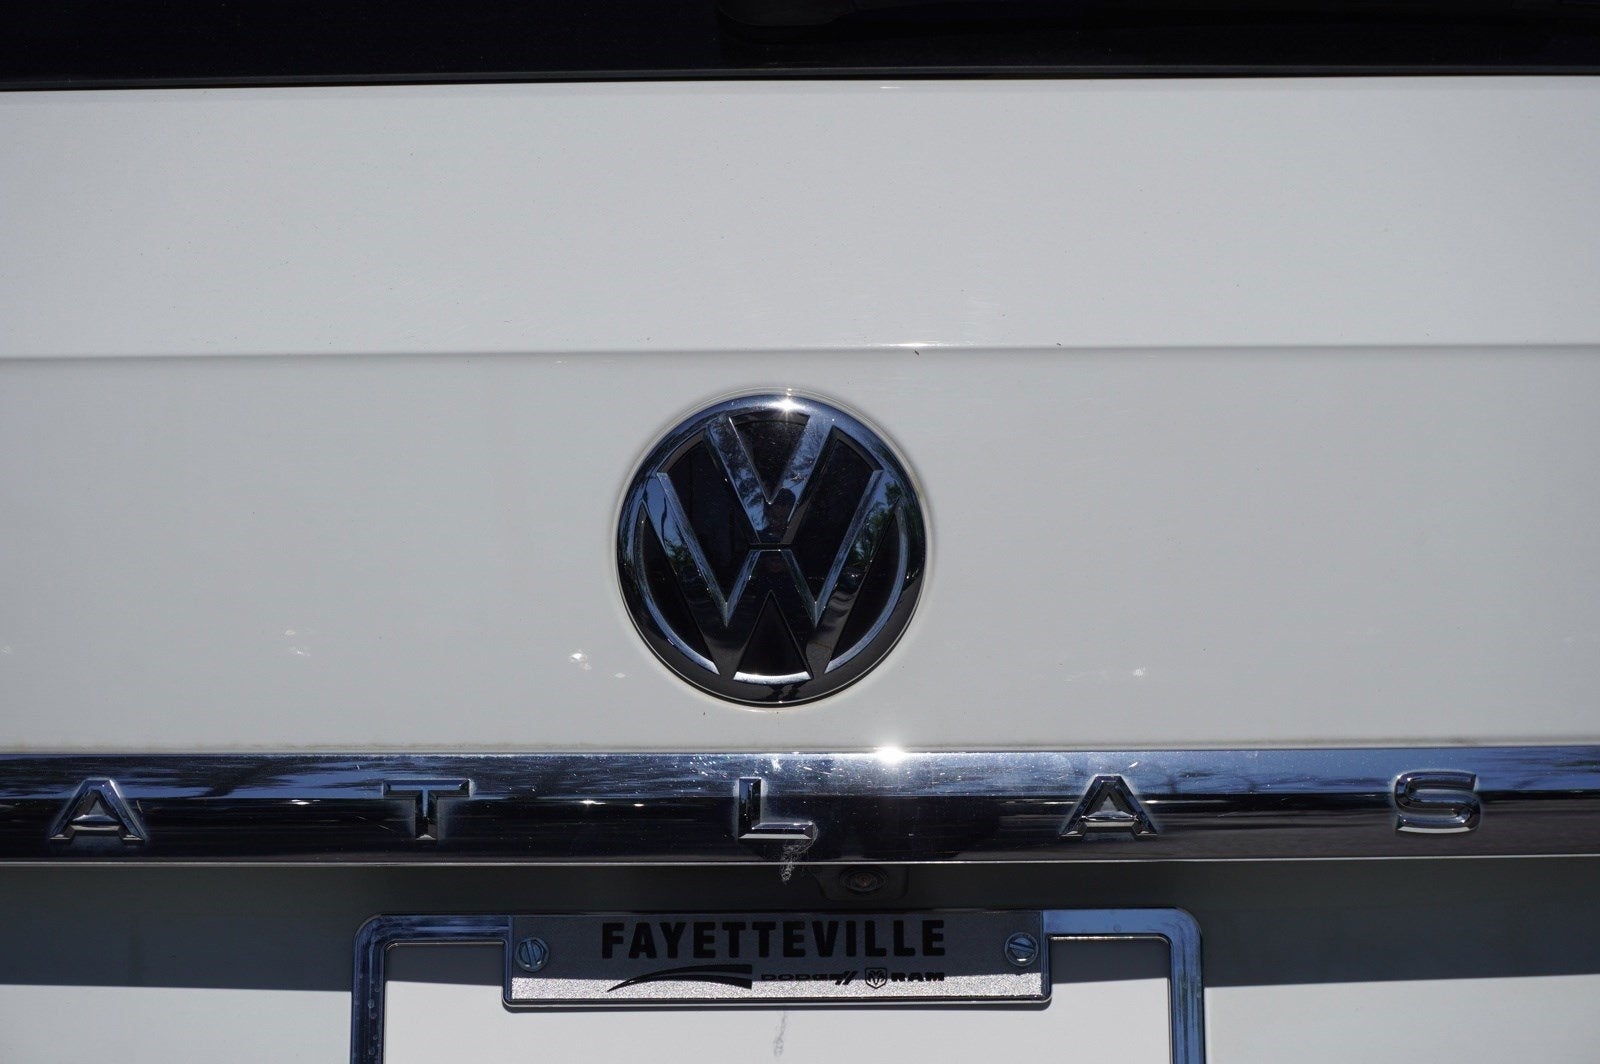 2019 Volkswagen Atlas 3.6L V6 S